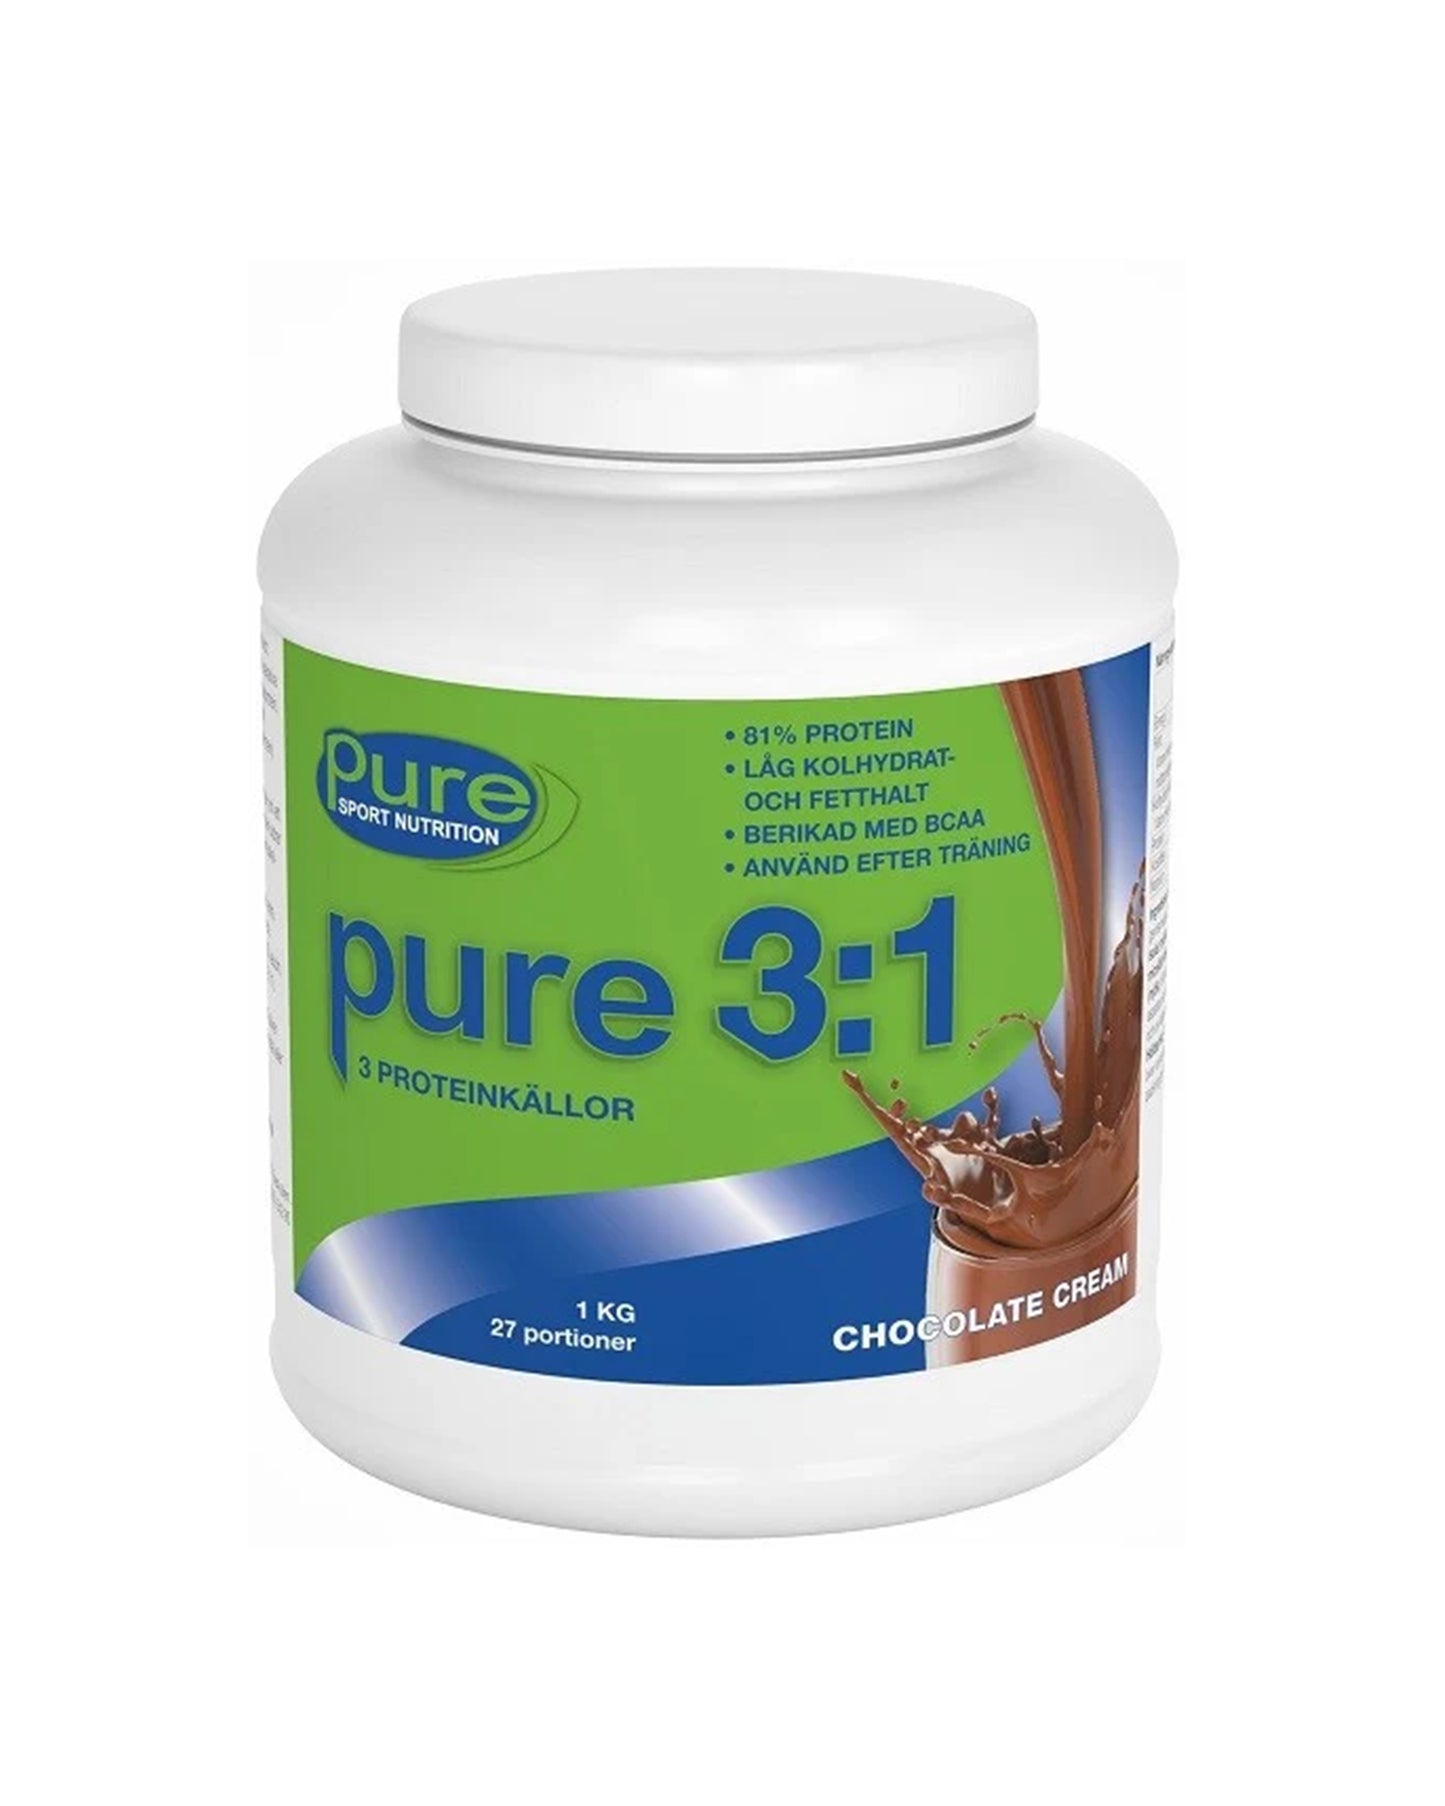 pure 3:1 Chocolate Creme (Blandprotein med de tre bästa proteinkällorna)